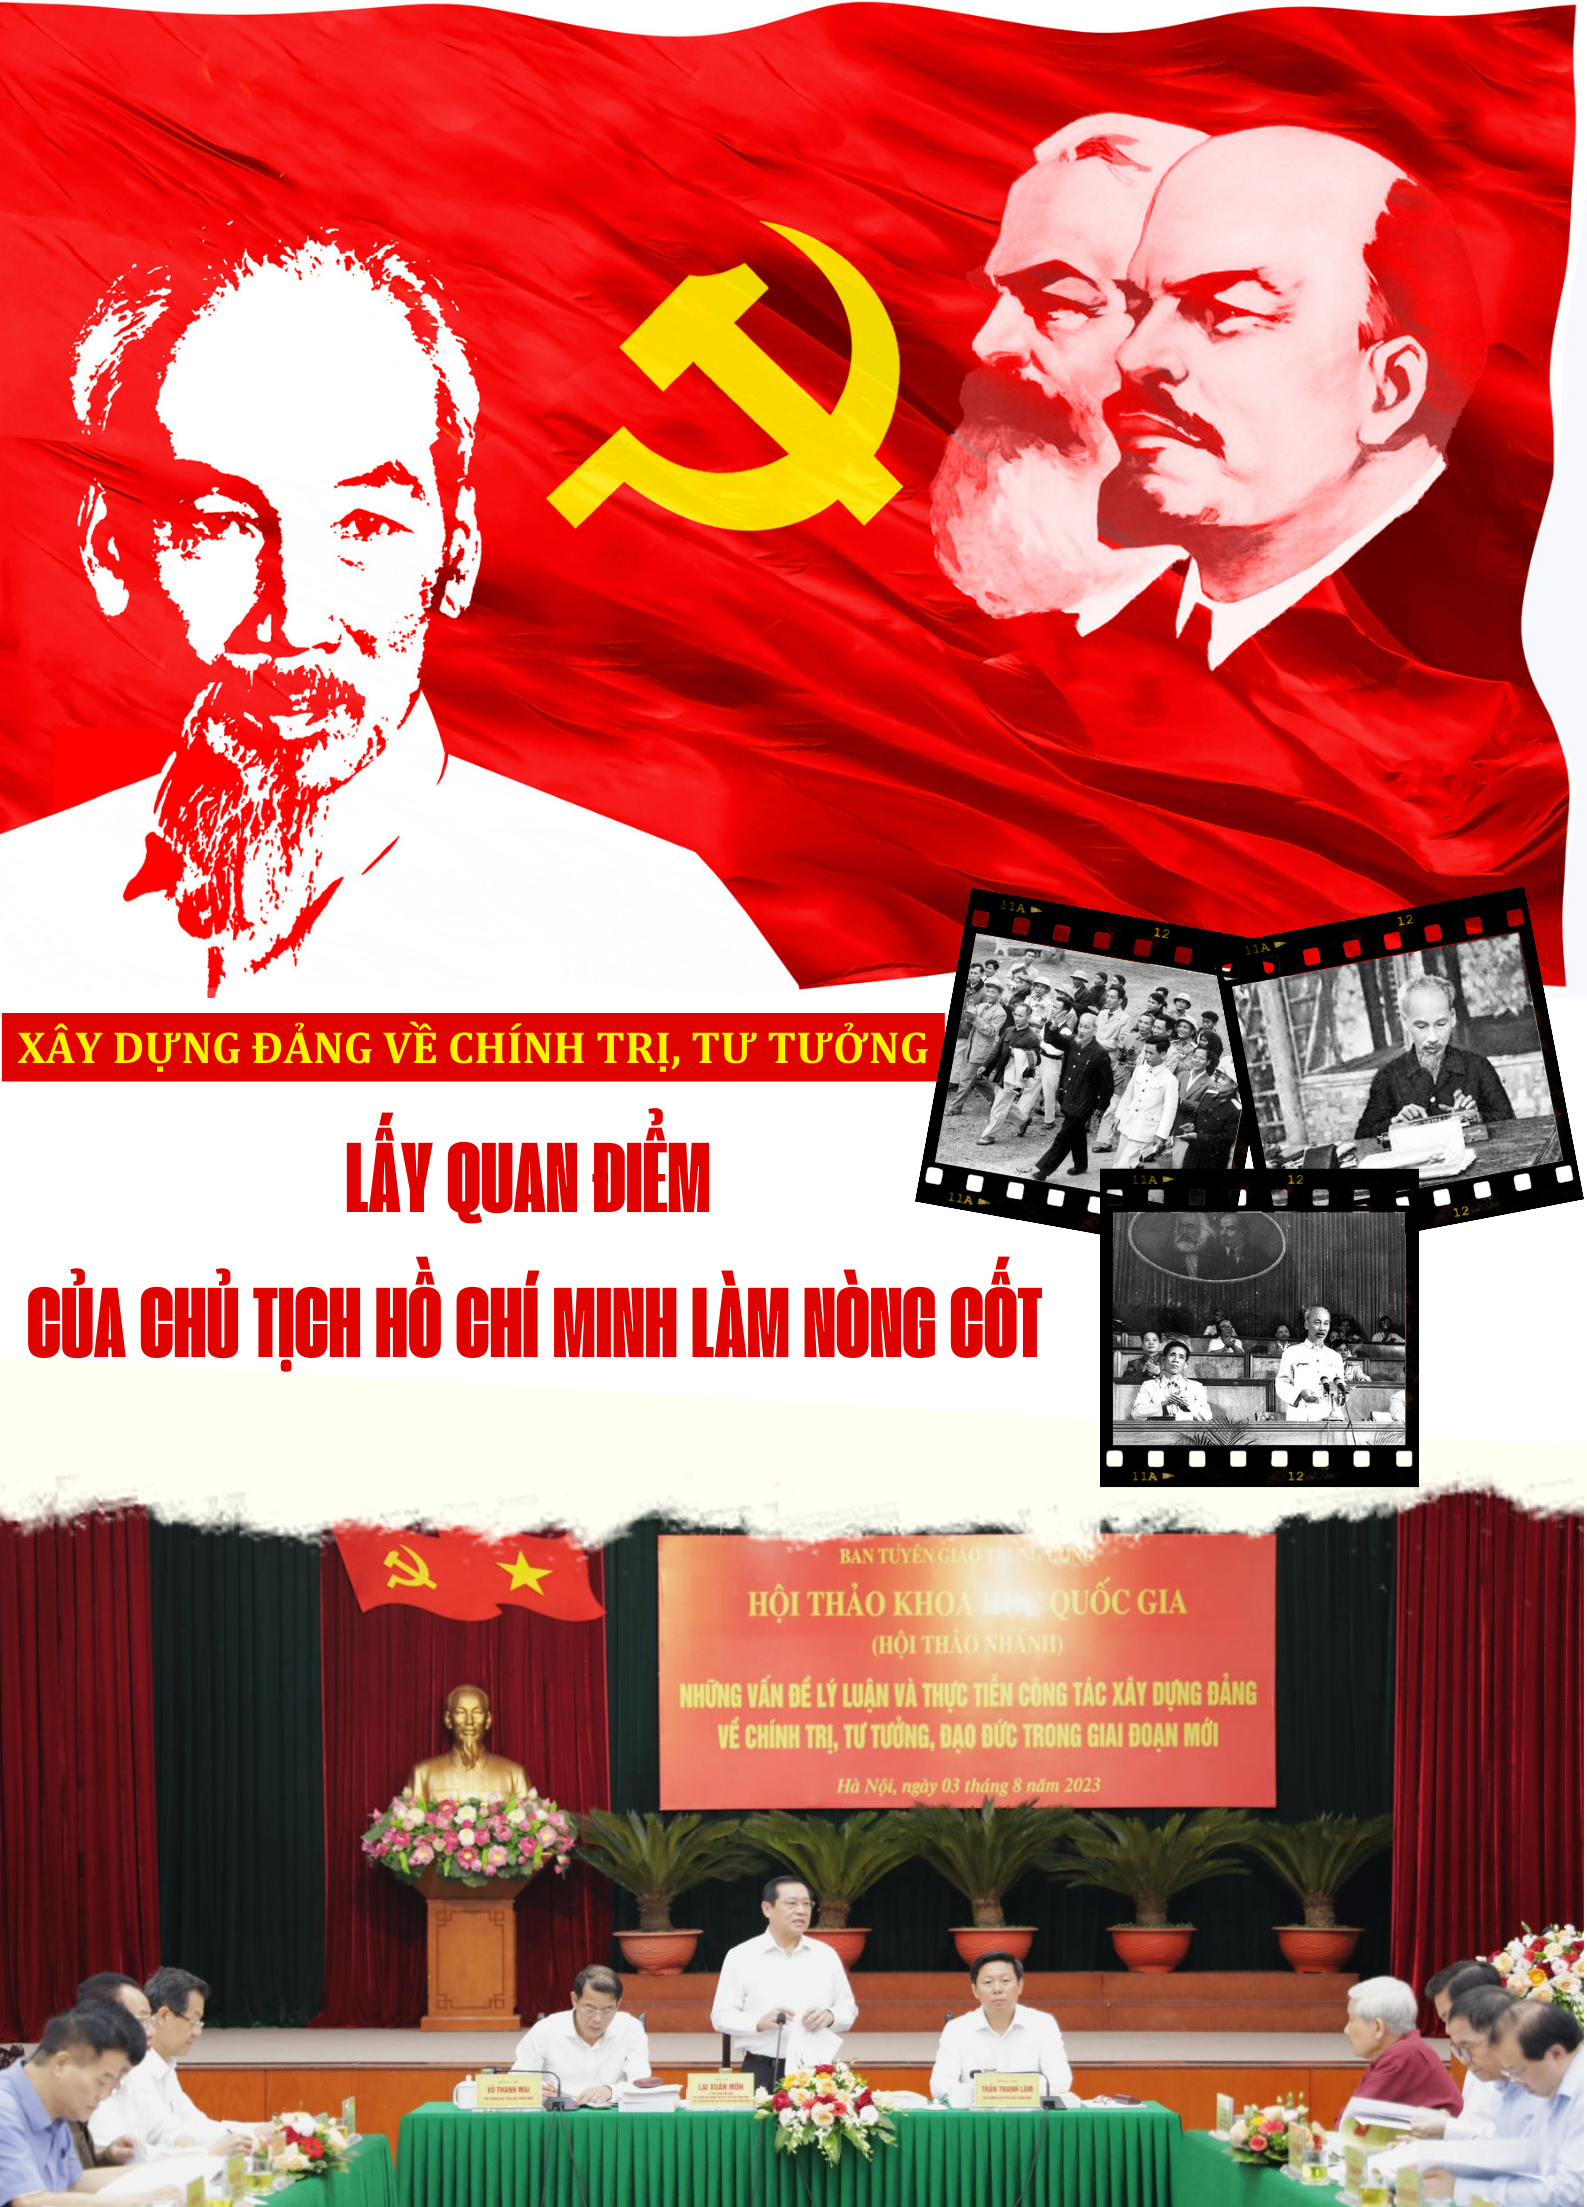 Xây dựng Đảng về chính trị, tư tưởng: Lấy quan điểm của Chủ tịch Hồ Chí Minh làm nòng cốt